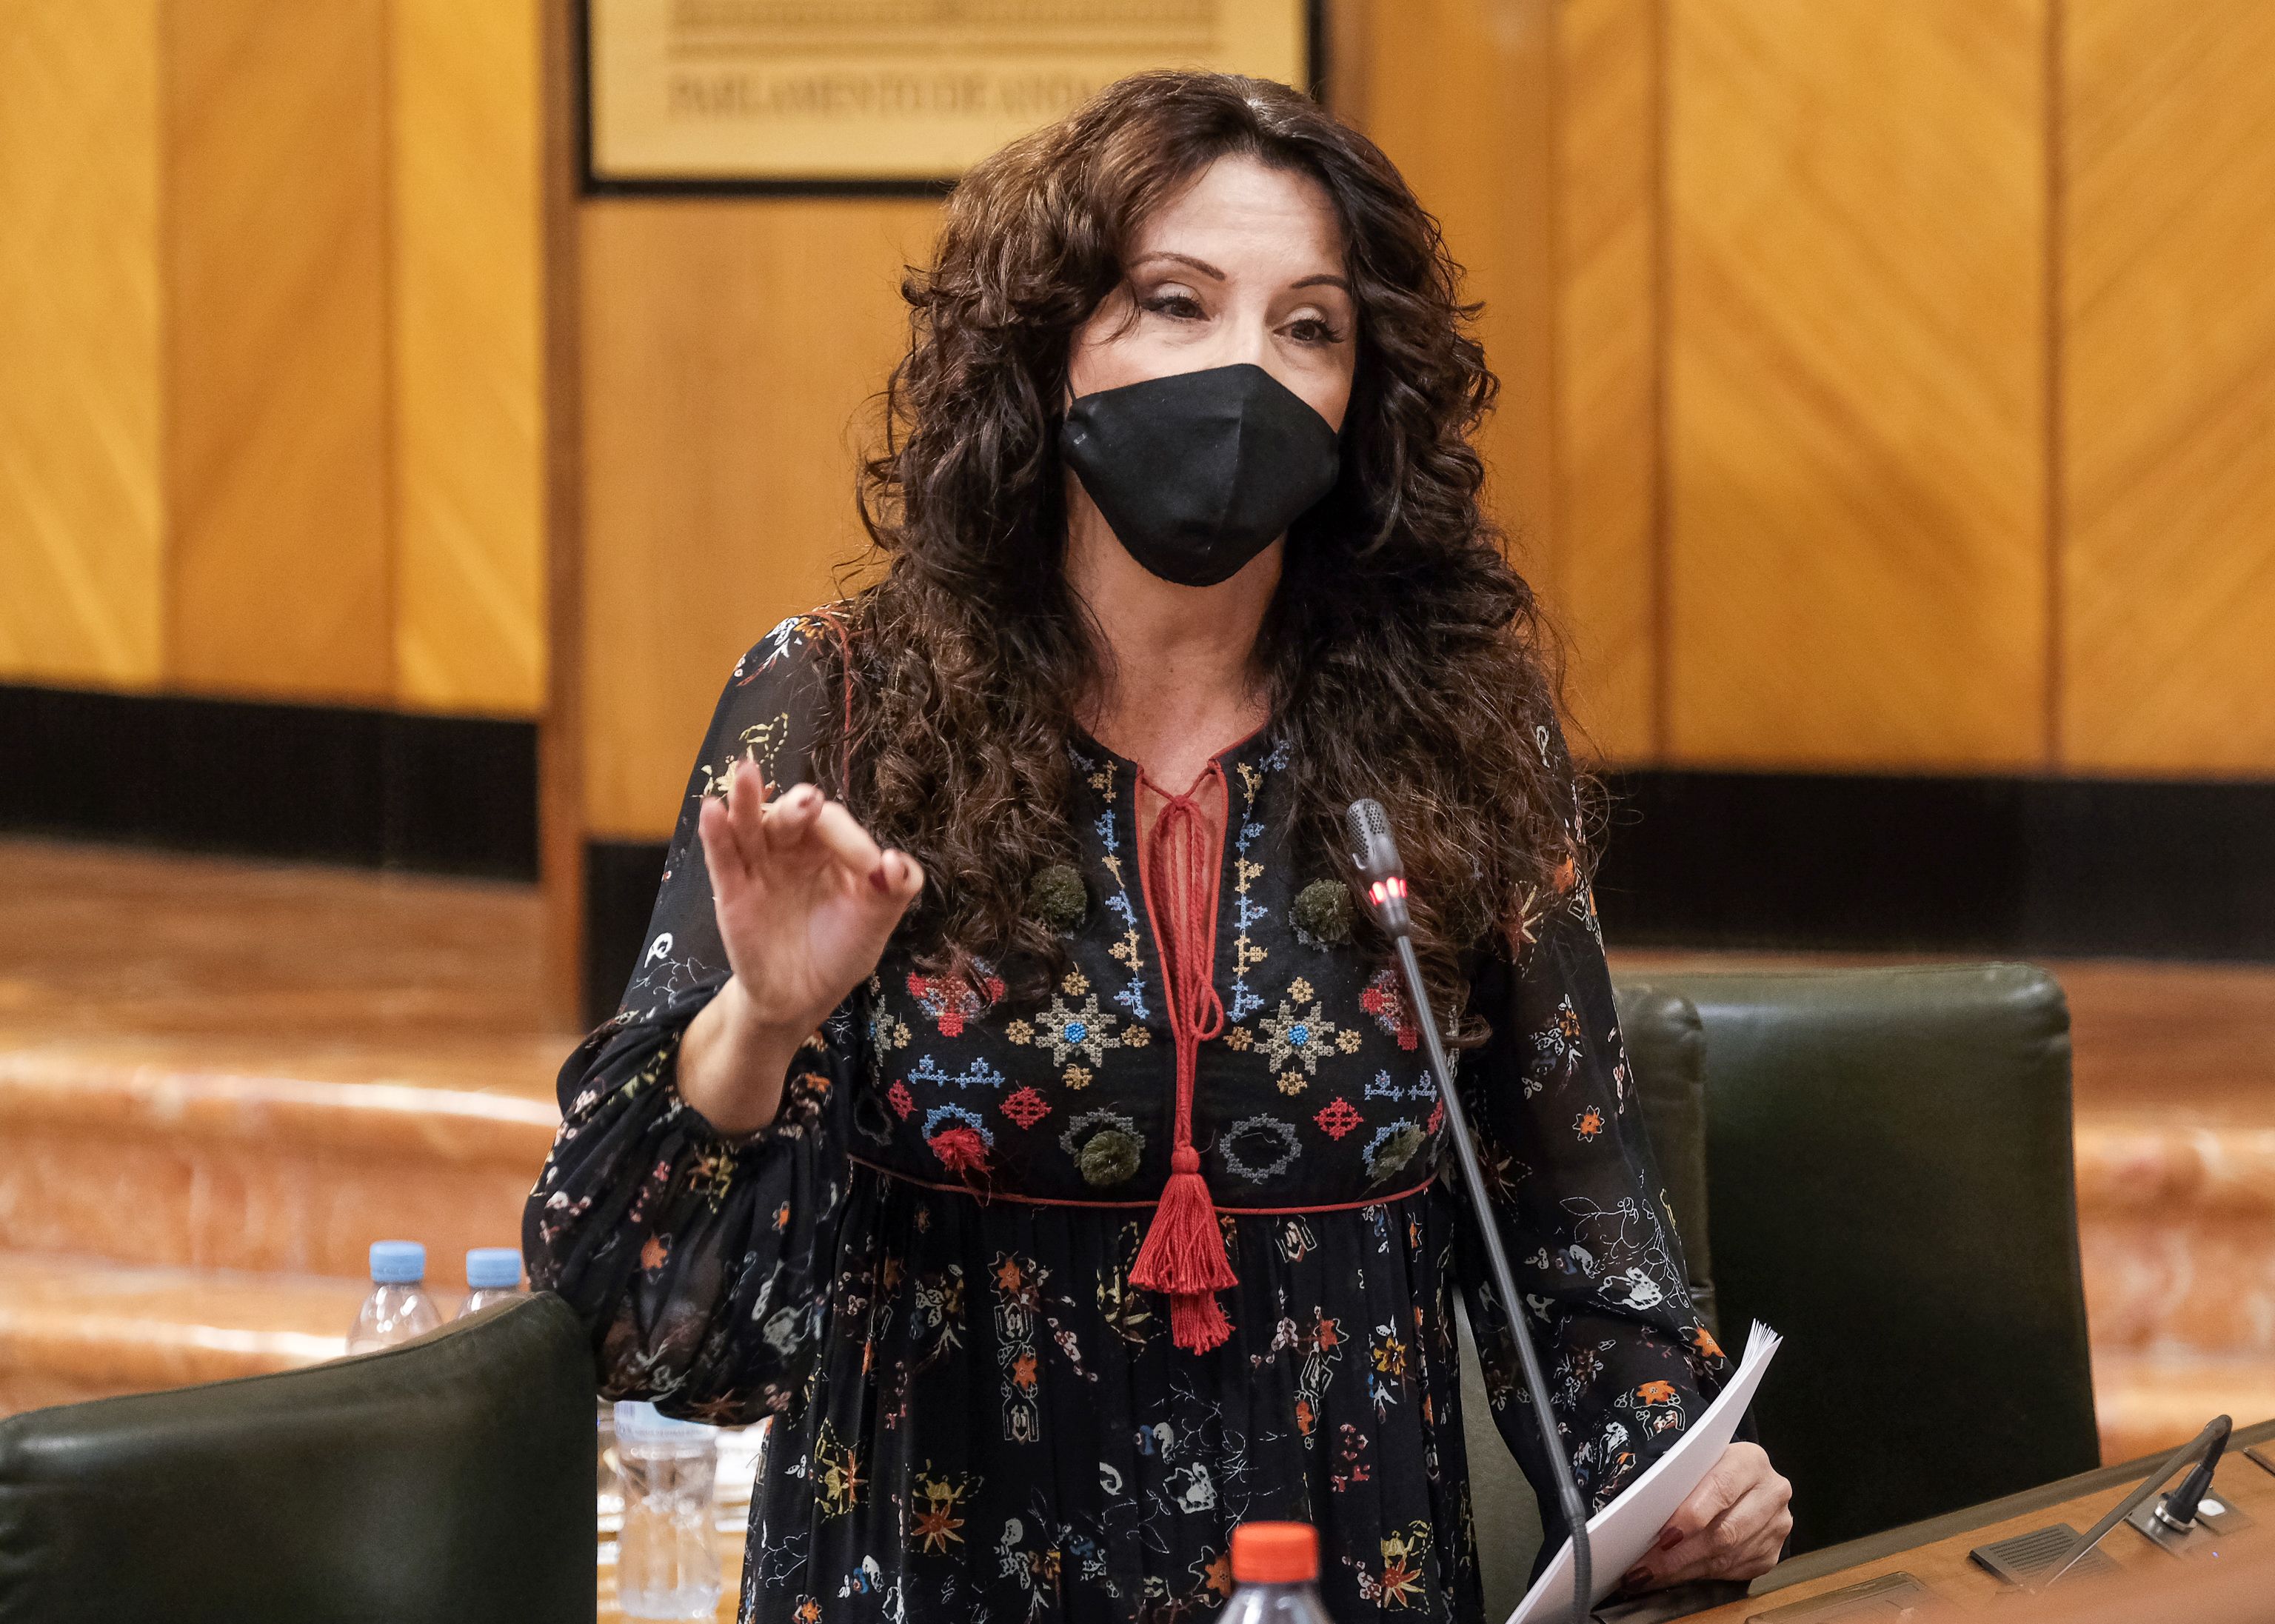 La consejera Rocío Ruiz replica a los insultos machistas de Vox: "Quién puede atar un corazón libre"